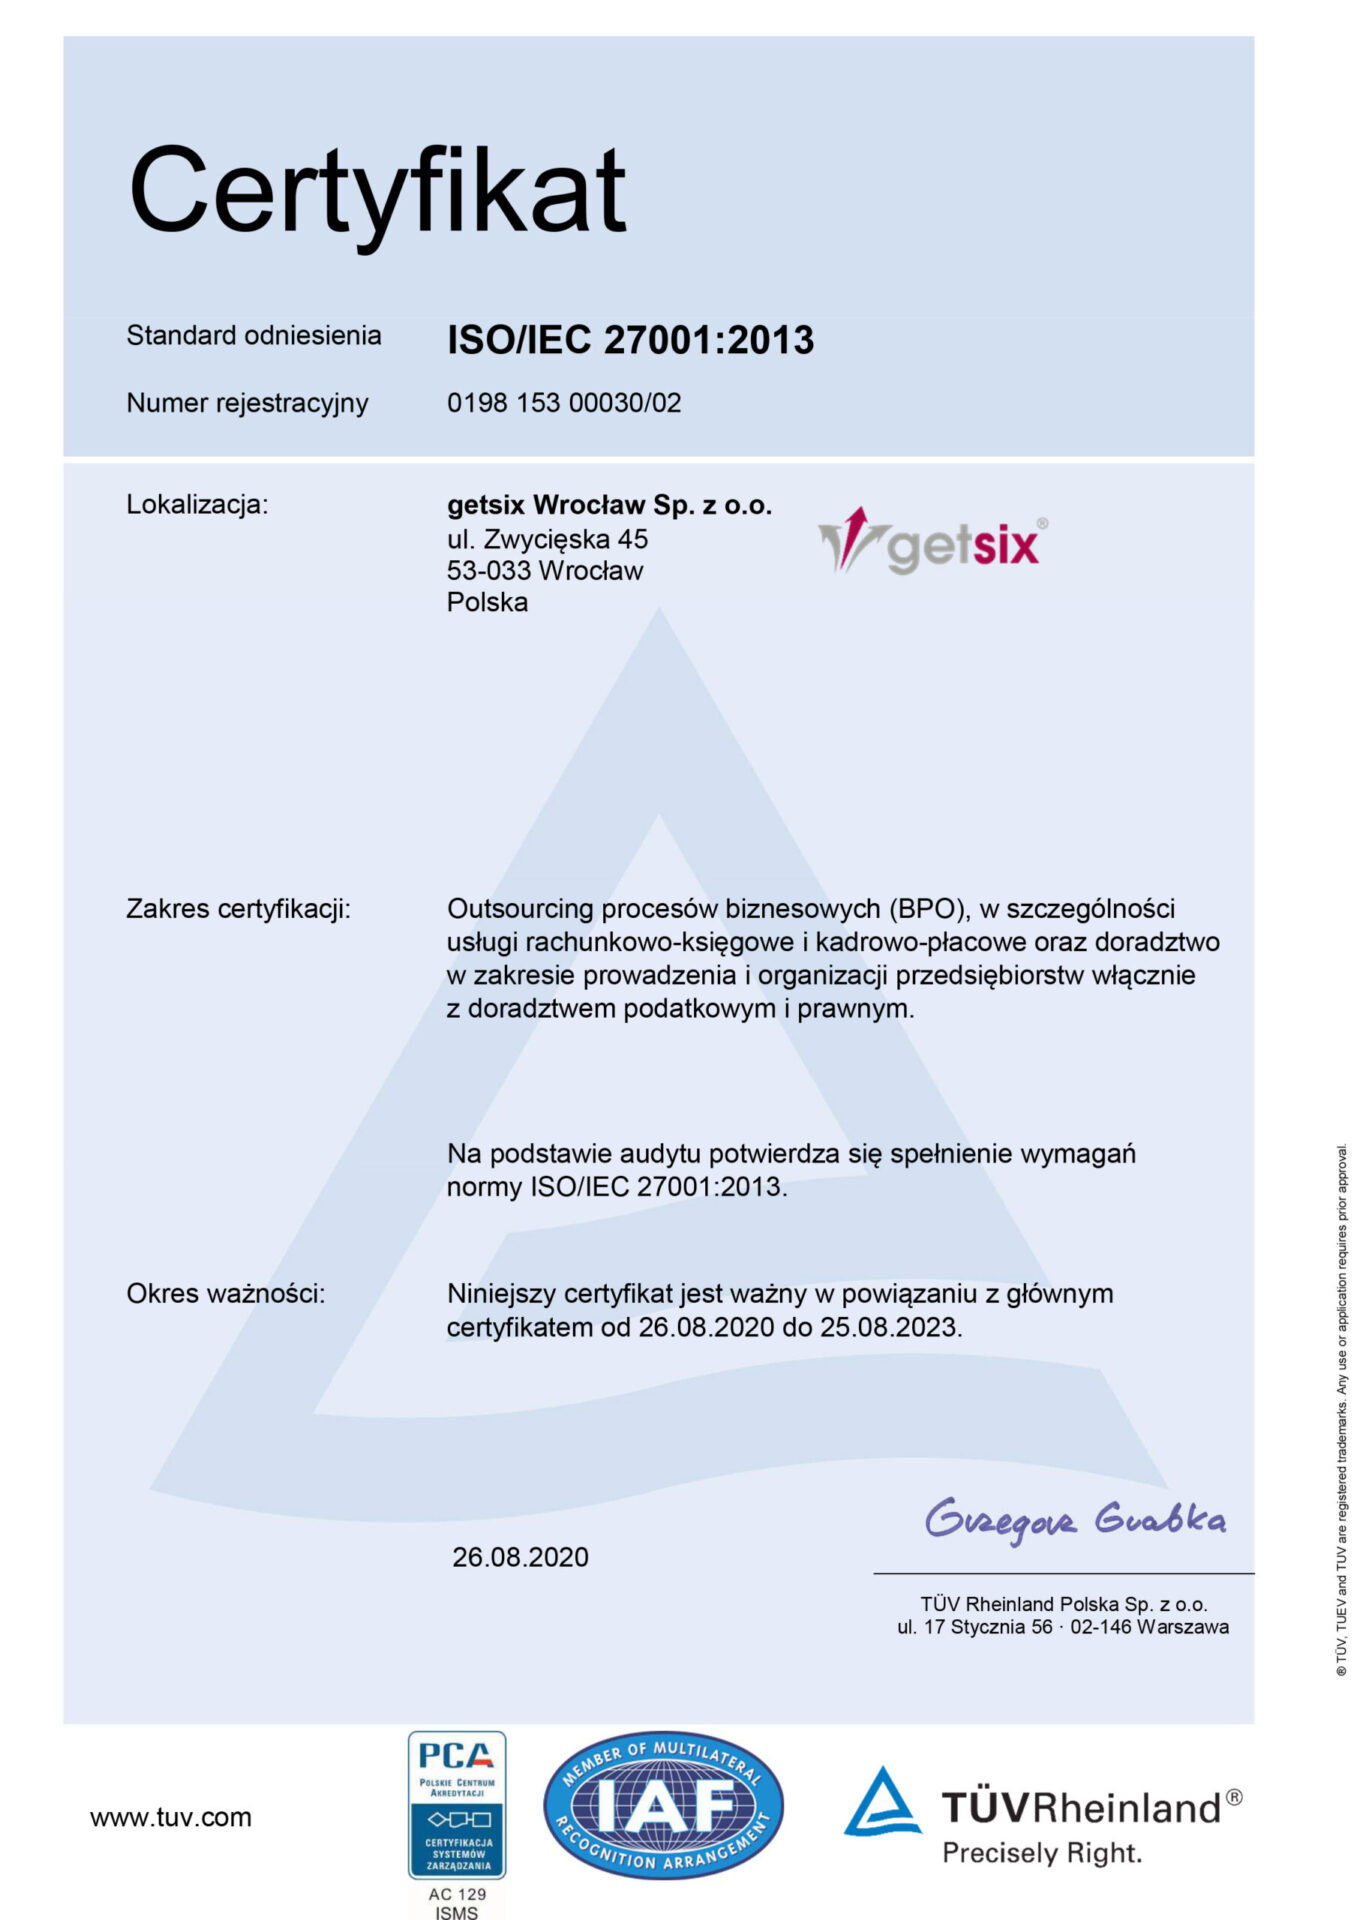 Certyfikat ISO 27001 dla getsix Wrocław